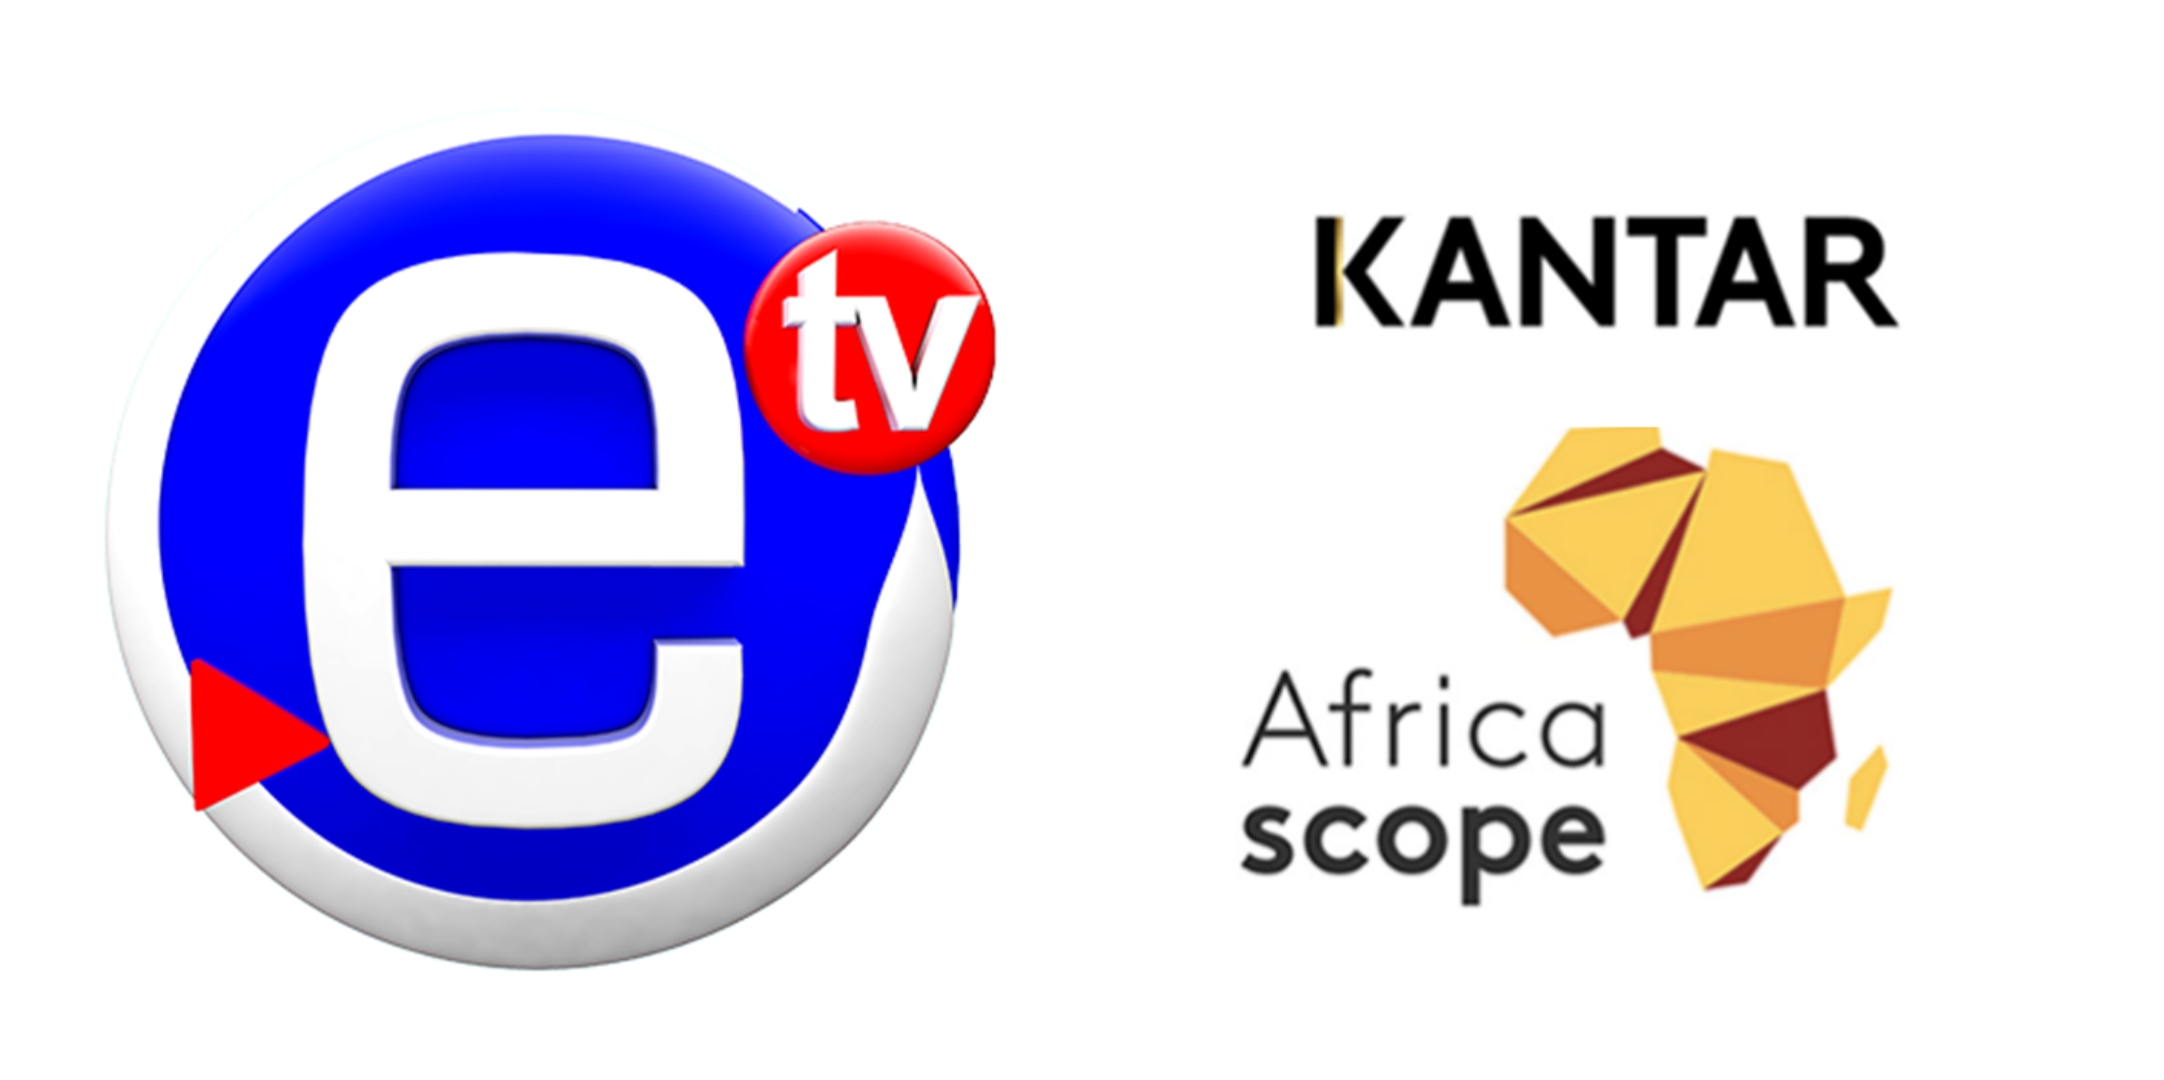 revelación Me preparé Ópera Audience : Après Médiamétrie, l'anglais Kantar confirme le leadership d' Equinoxe TV au Cameroun - Médiatude